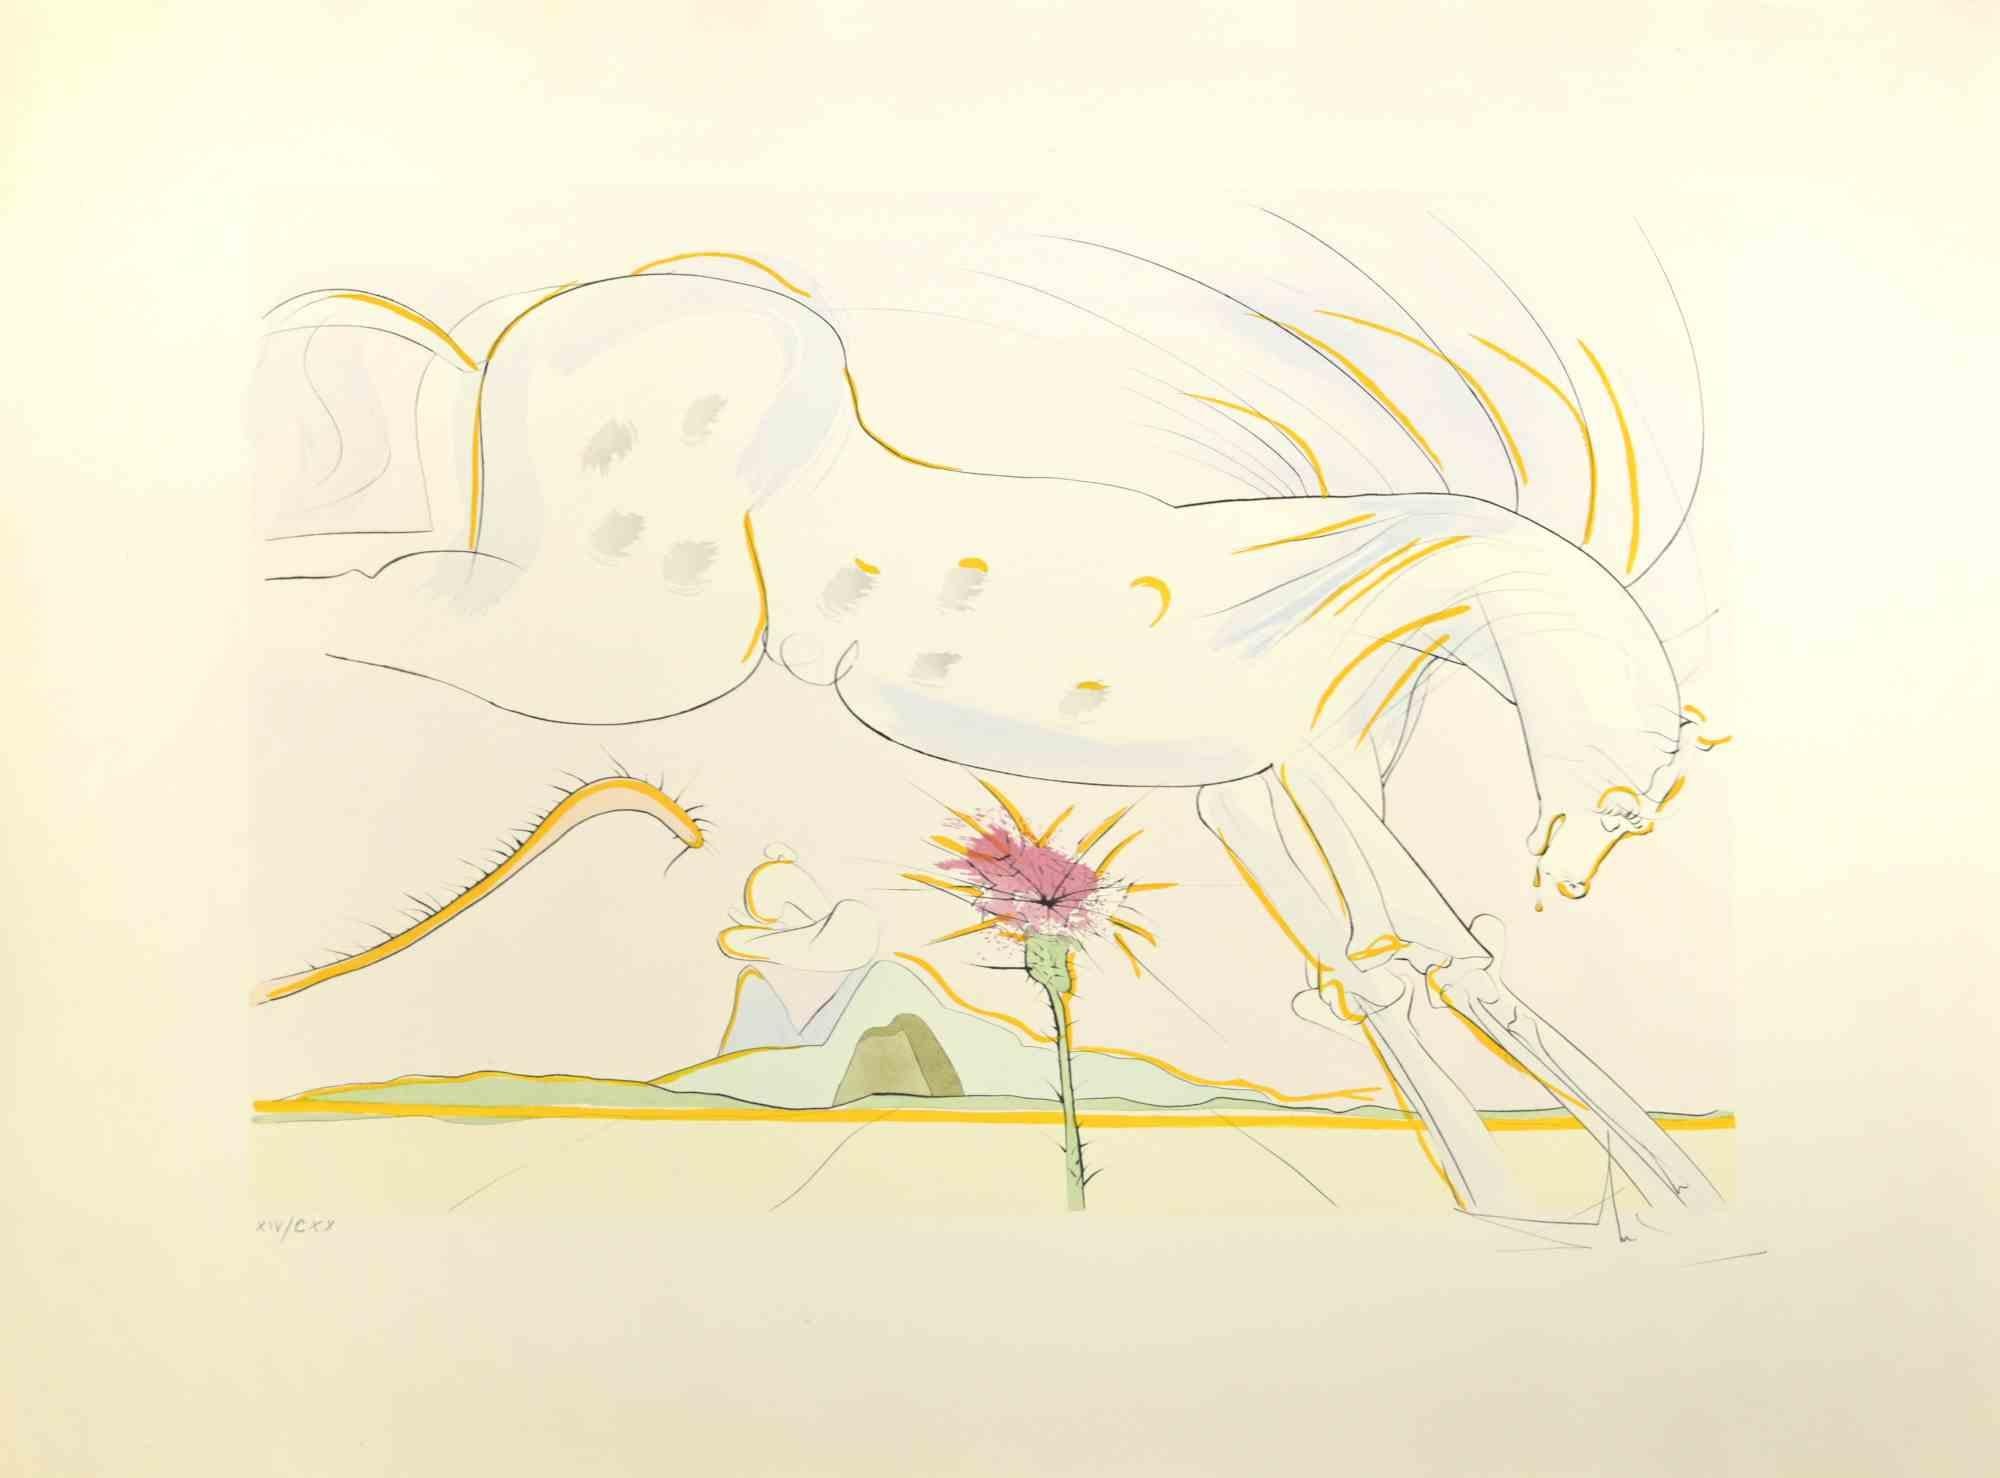 Animal Print Salvador Dalí - Le cheval et le loup - eau-forte  - 1974